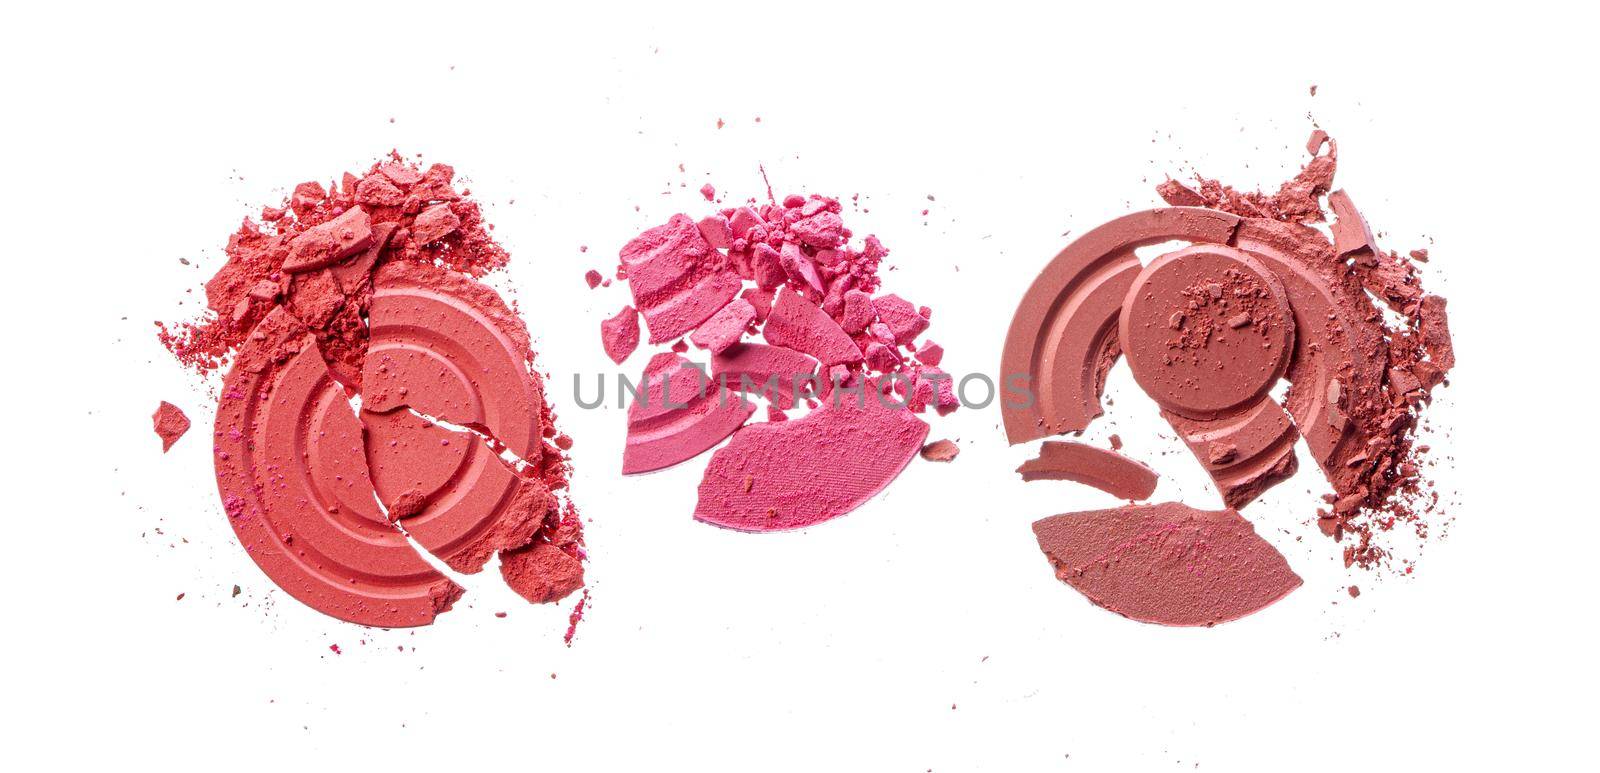 Smashed pink blush cosmetics isolated on white background, close up